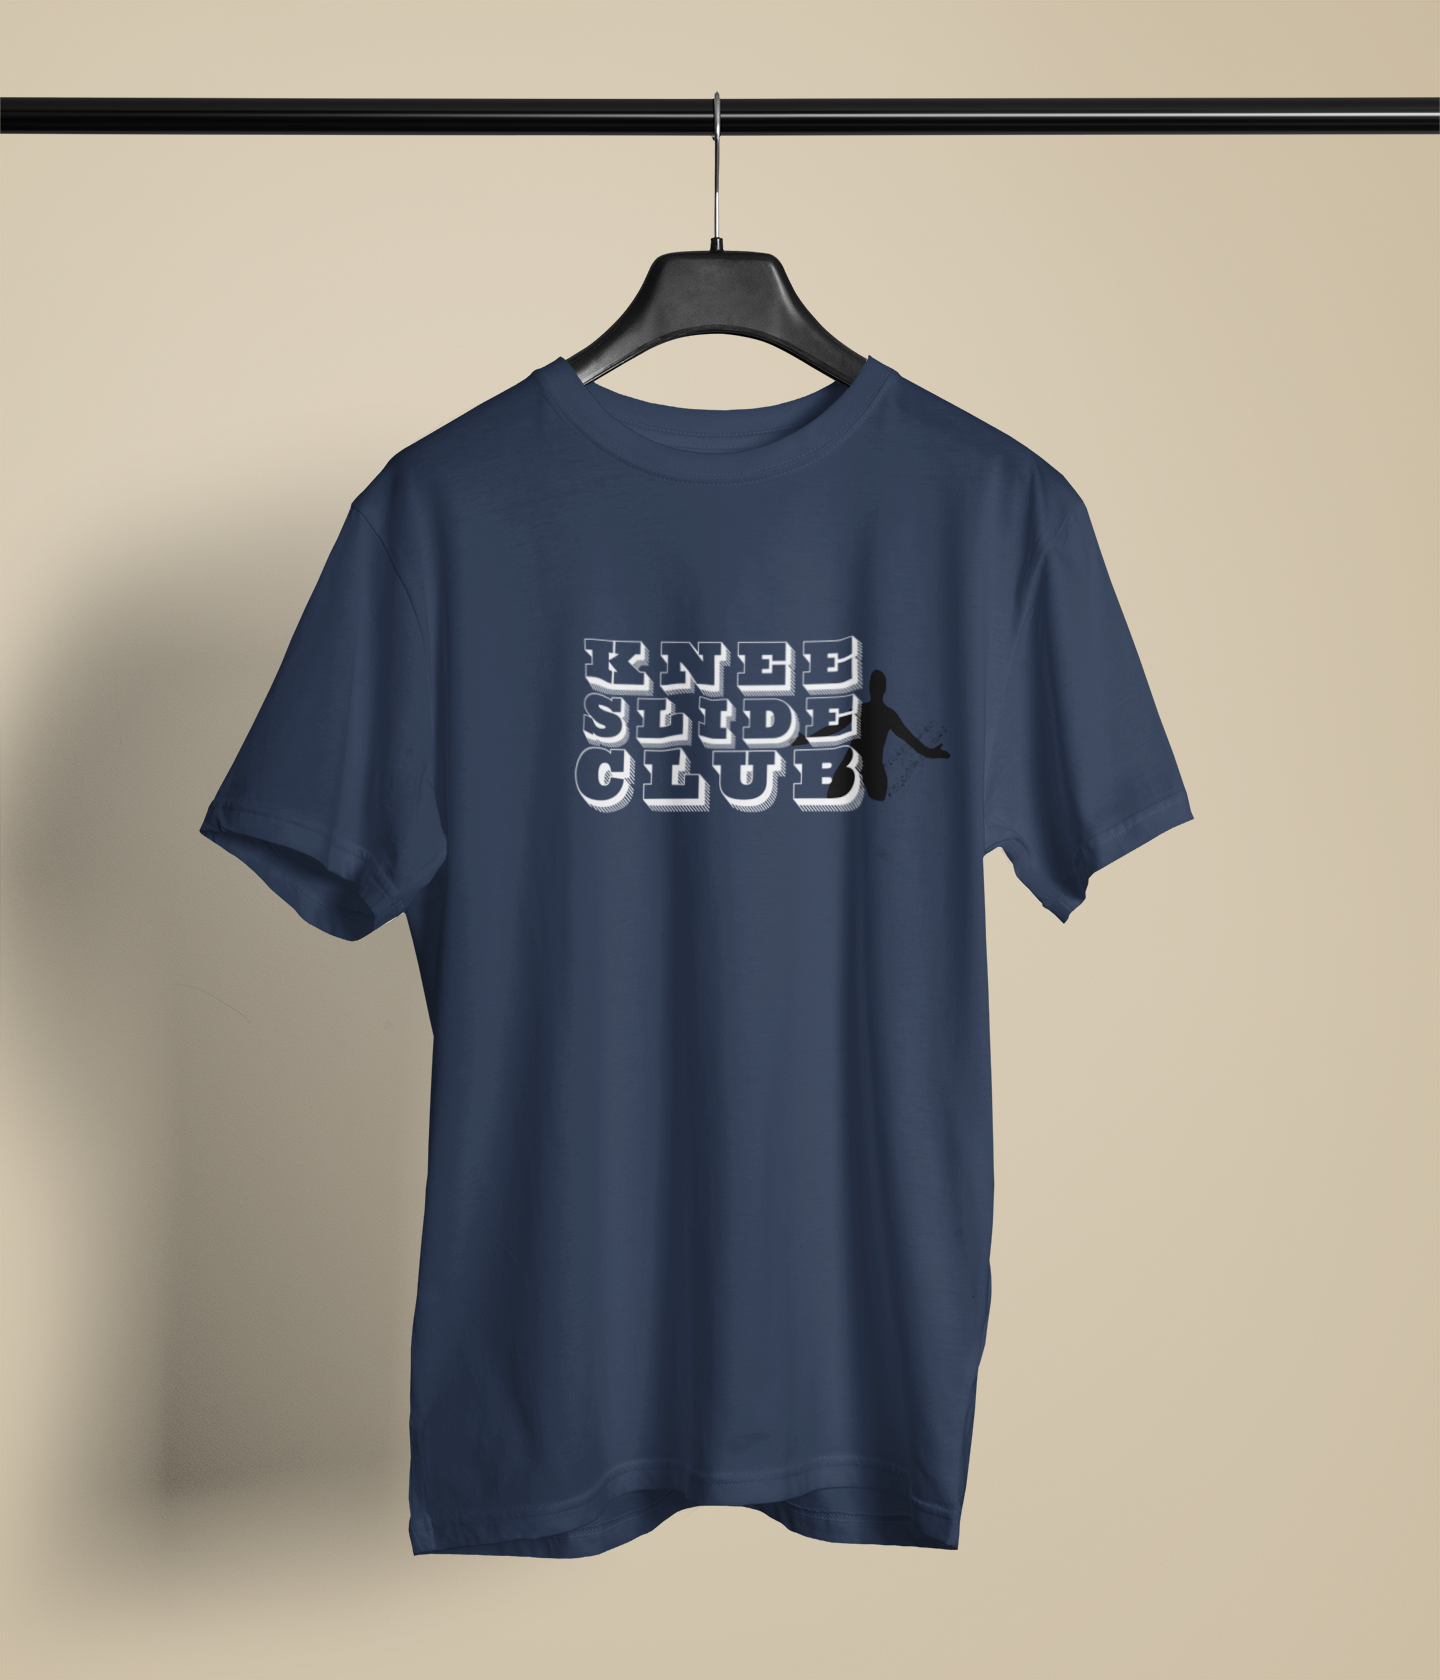 Kneeslide Club Silhouette T-shirt